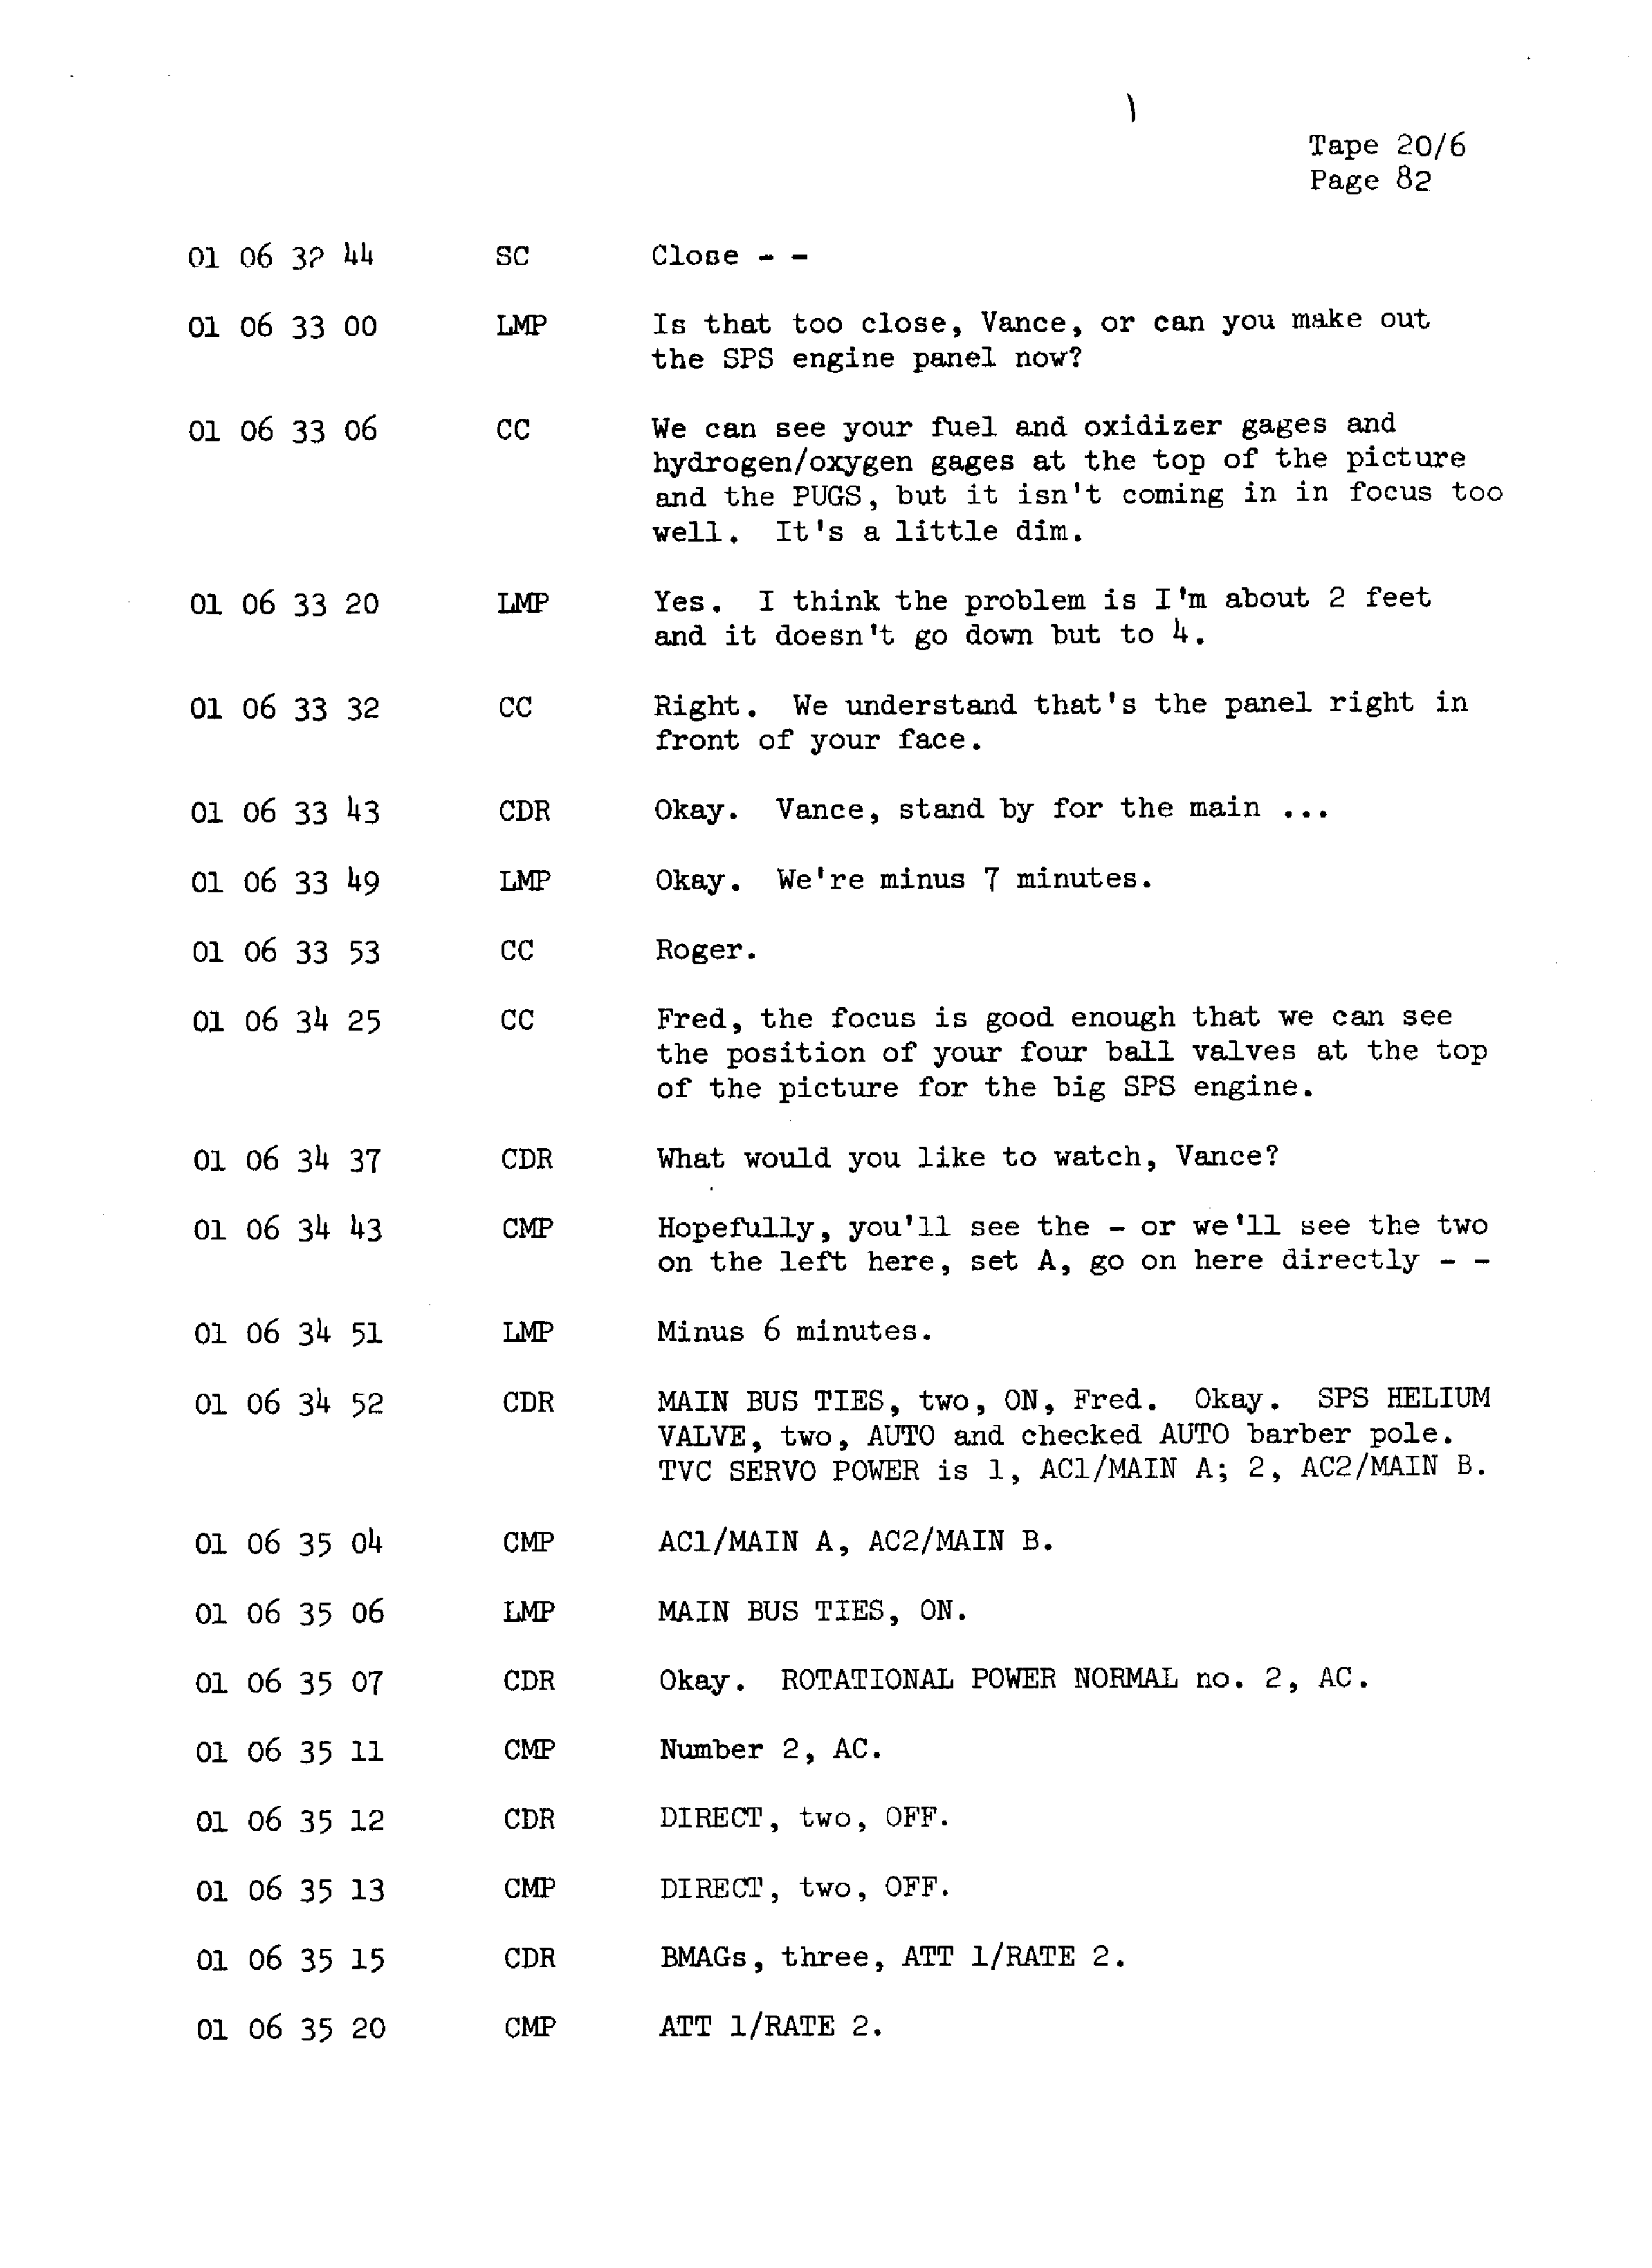 Page 89 of Apollo 13’s original transcript